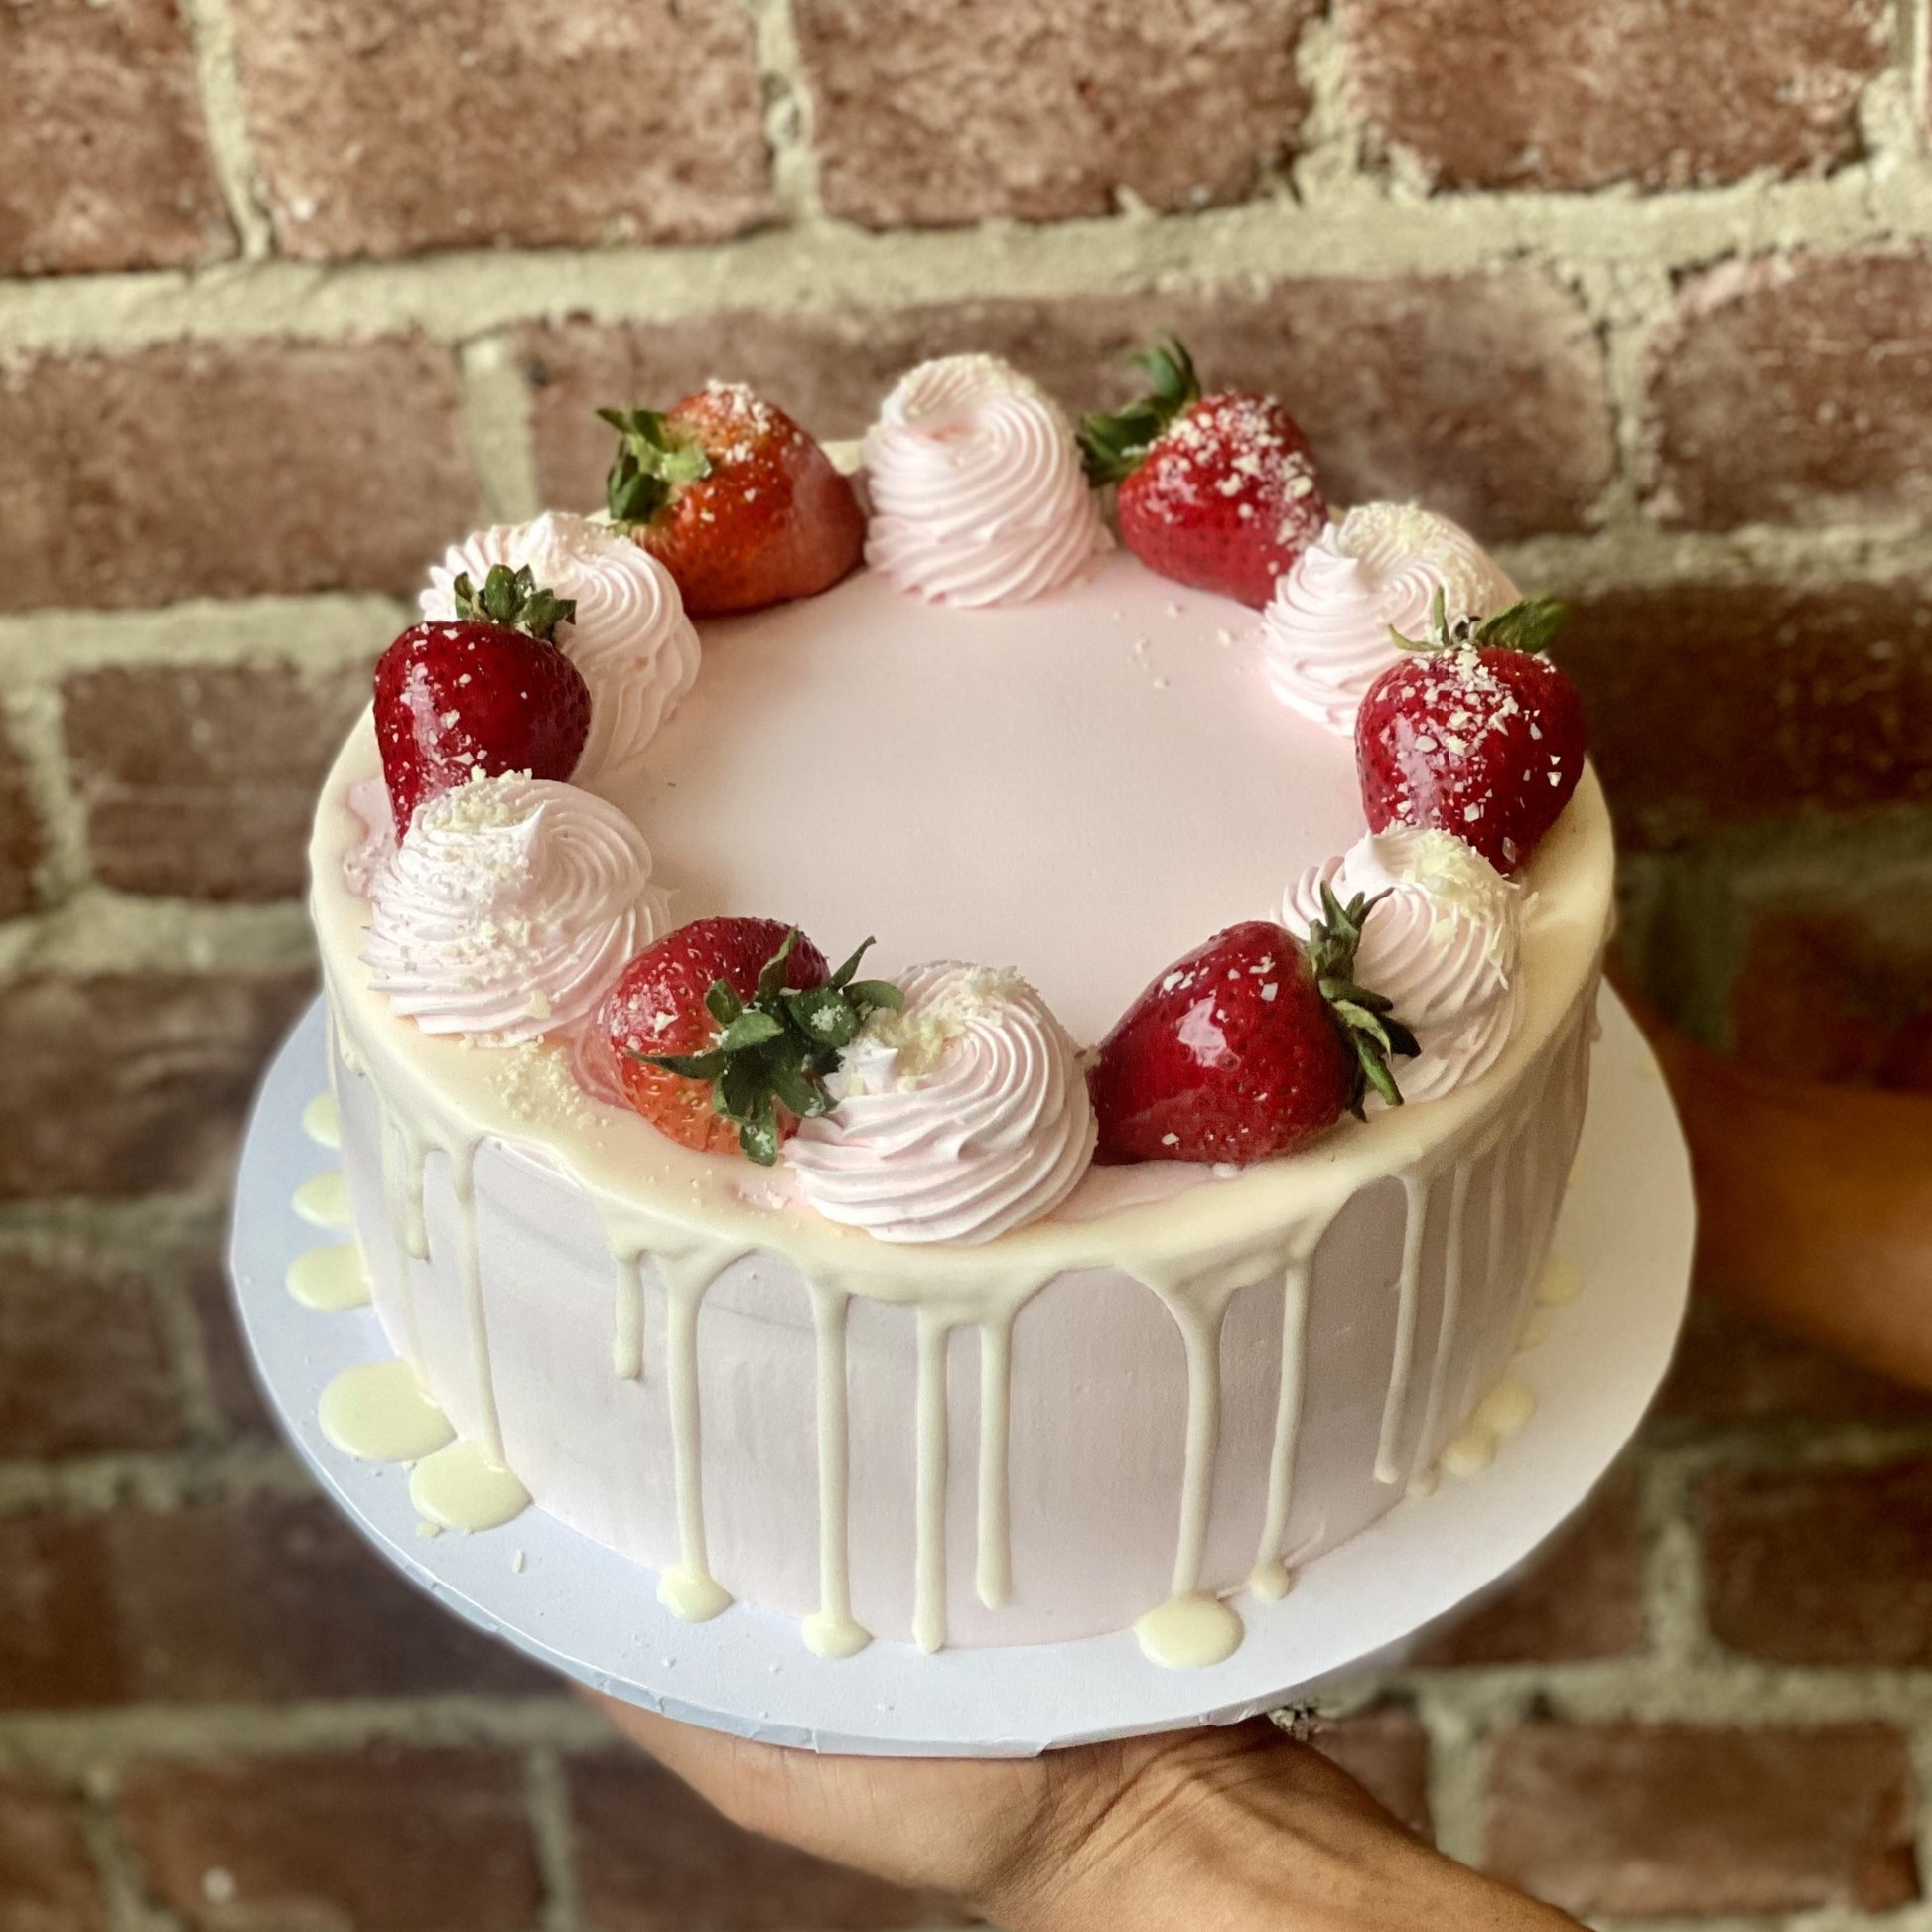 Pink cake with vanilla drip and chocolate strawberries